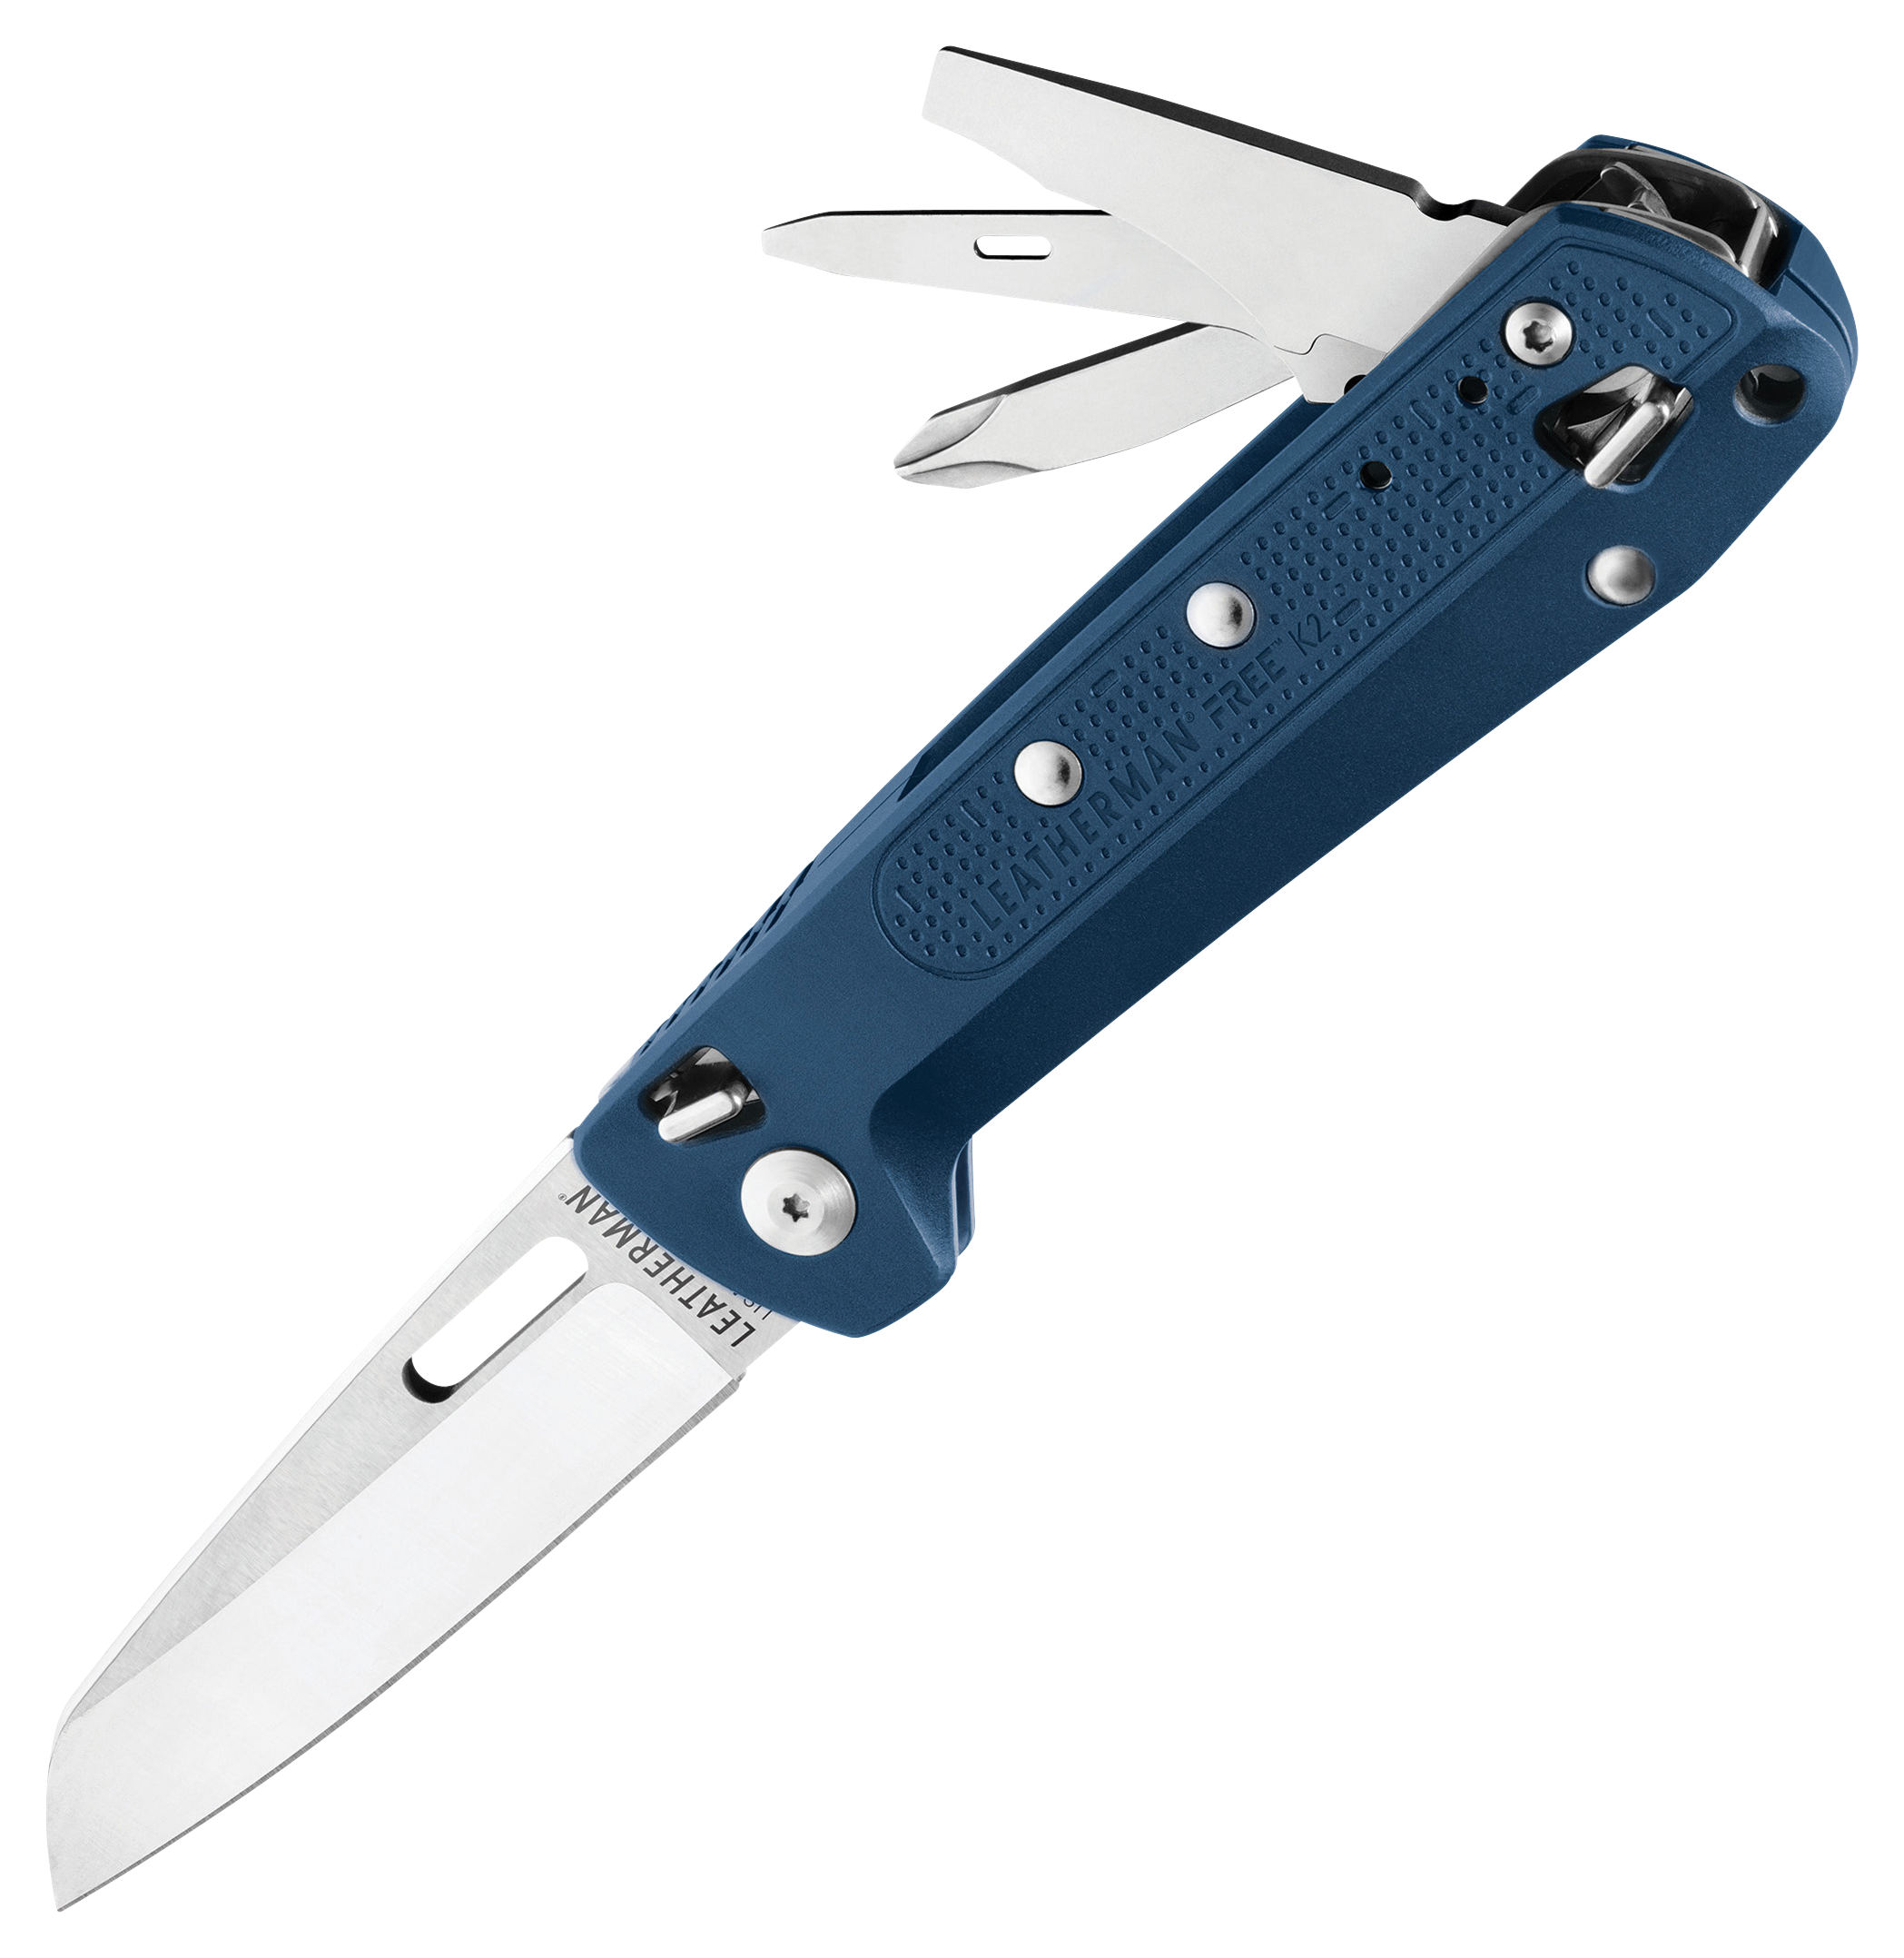 Leatherman FREE K2 Multi-Tool Pocket Knife - Navy